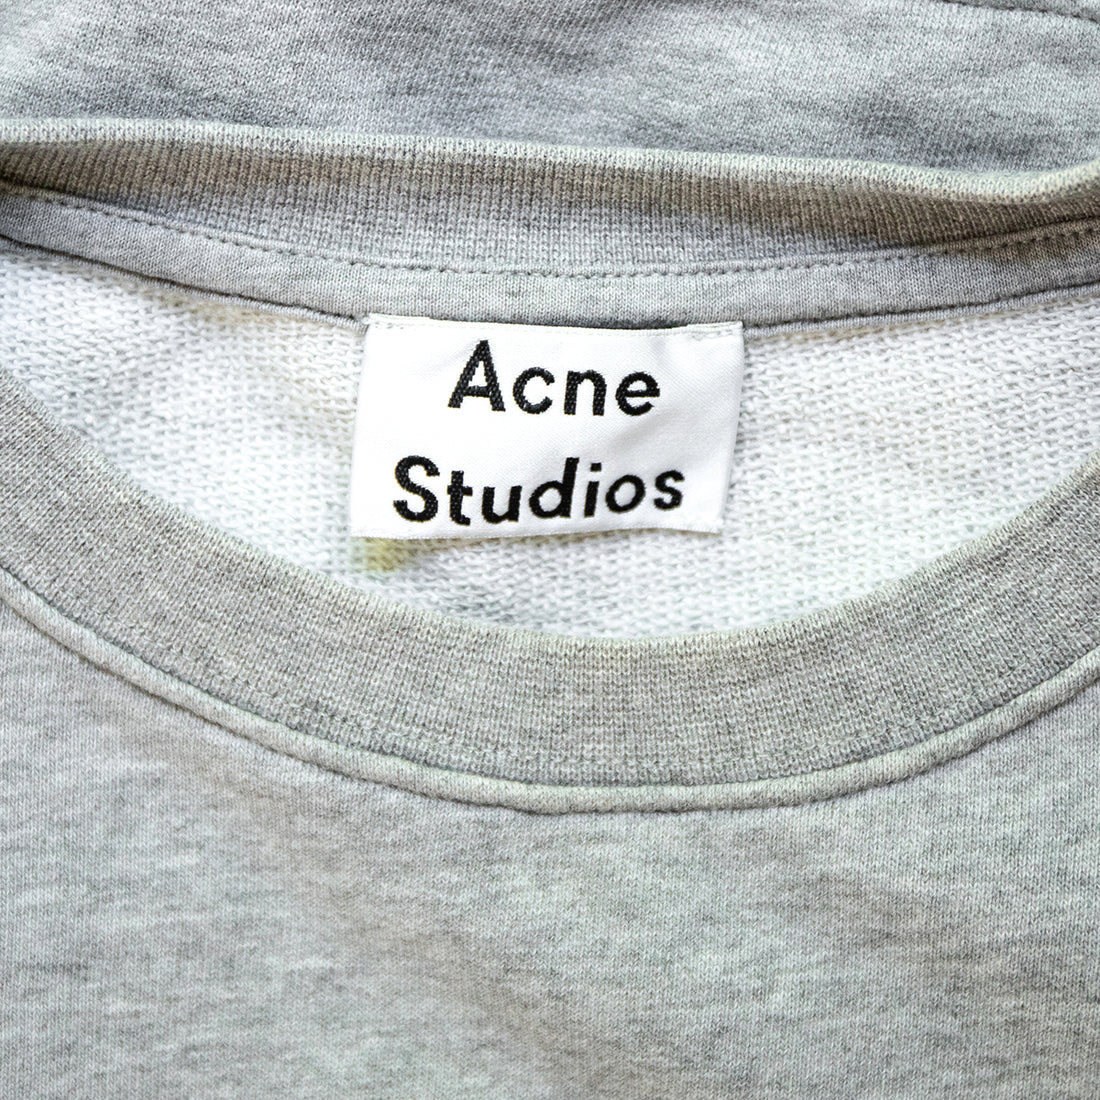 Acne Studios banana sweatshirt